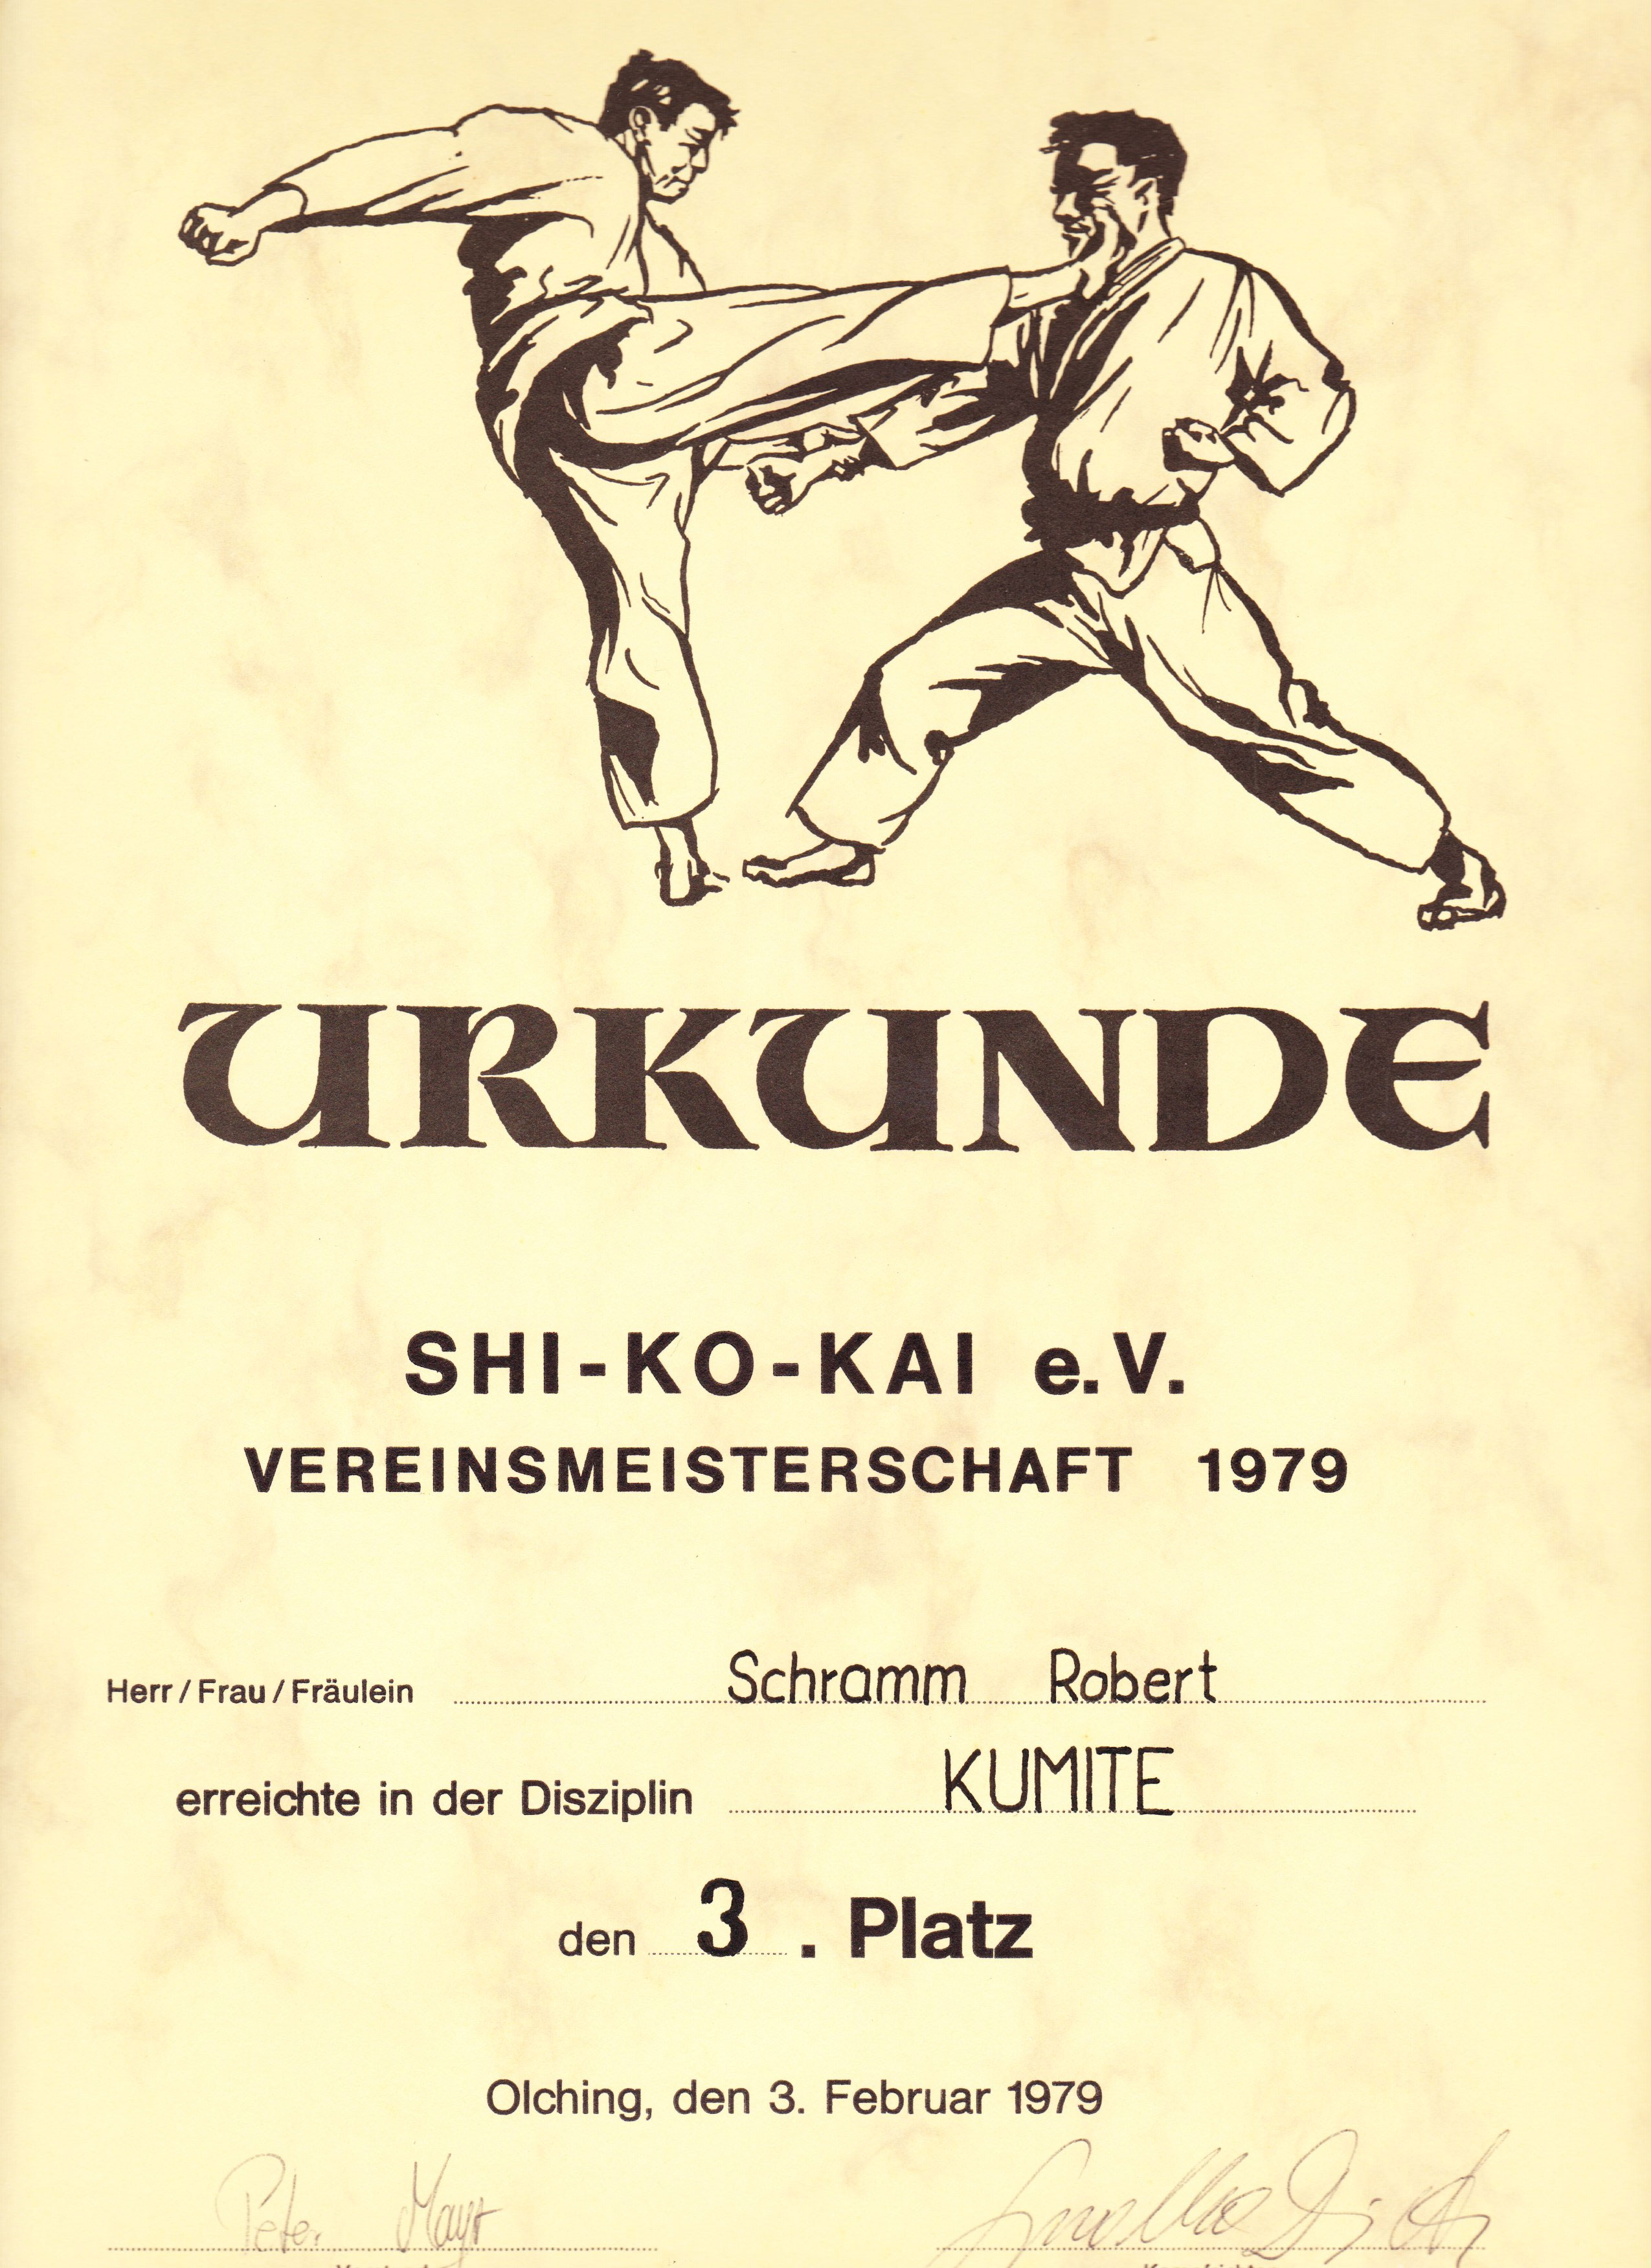 Karate-Urkunde-1979